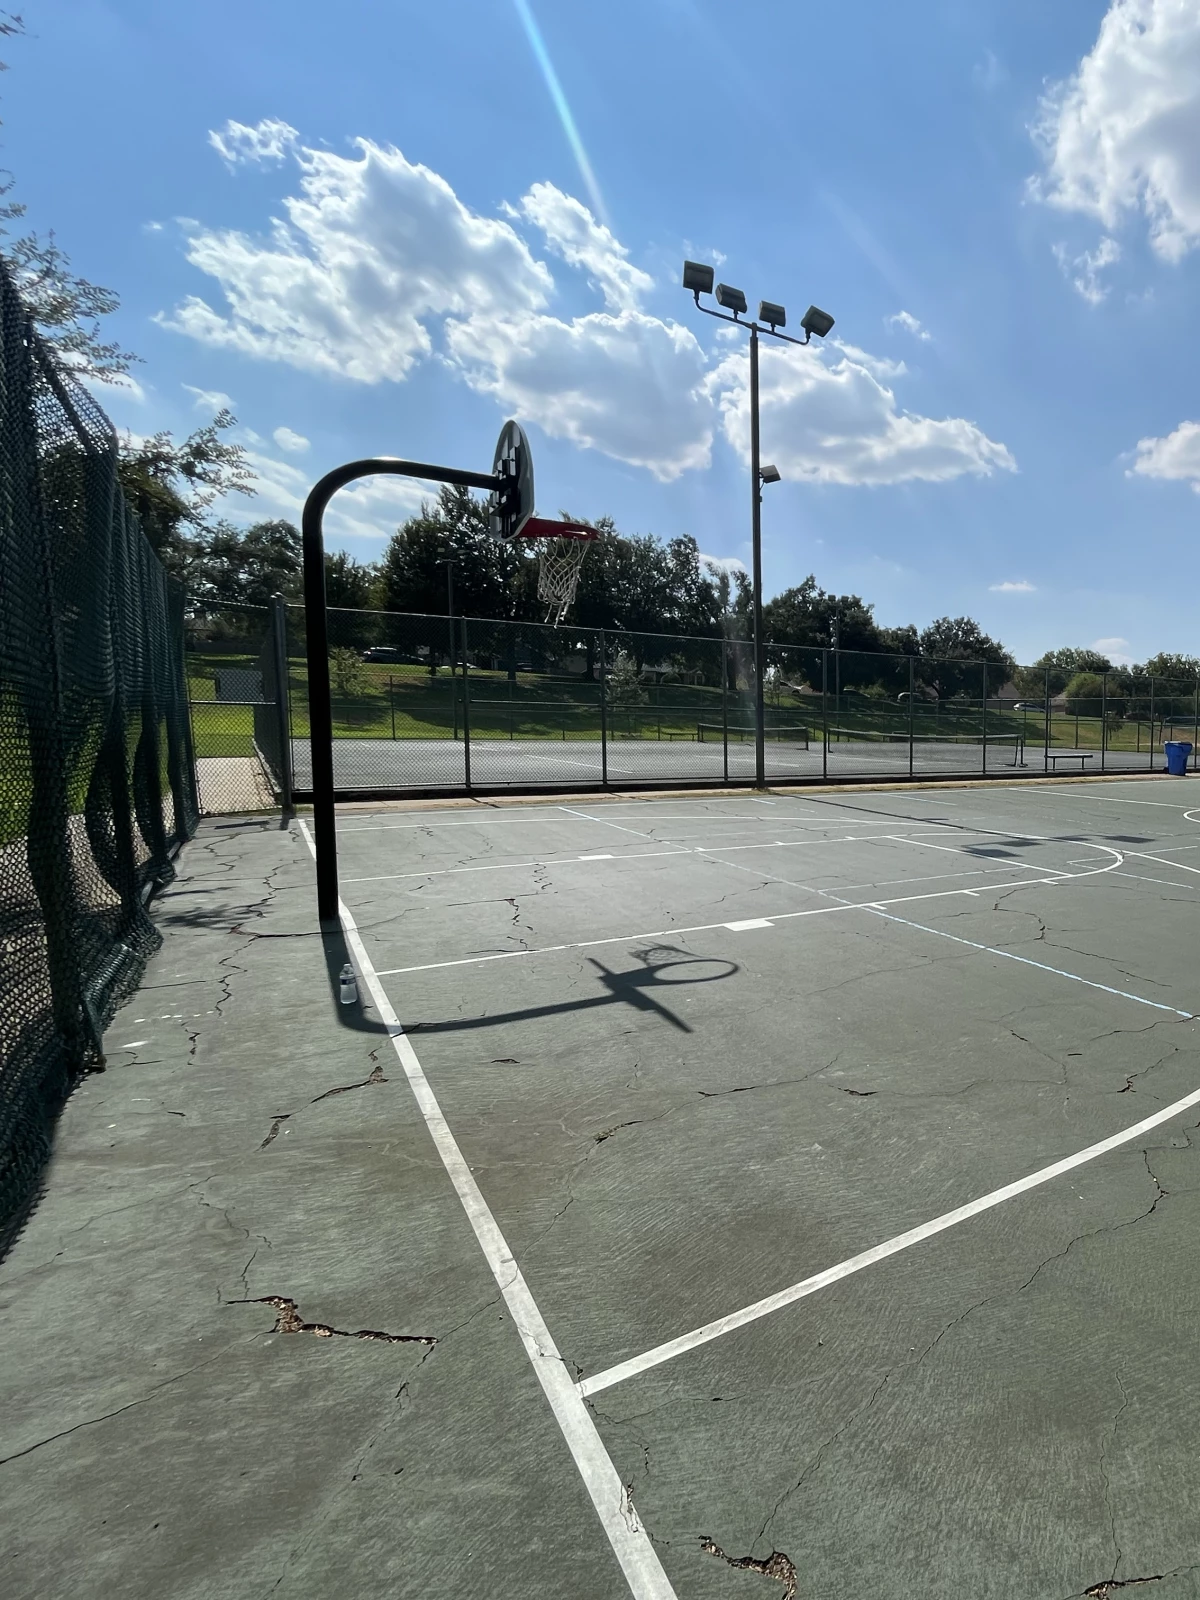 Austin TX Basketball Court: Katherine Fleischer Park Courts of the World